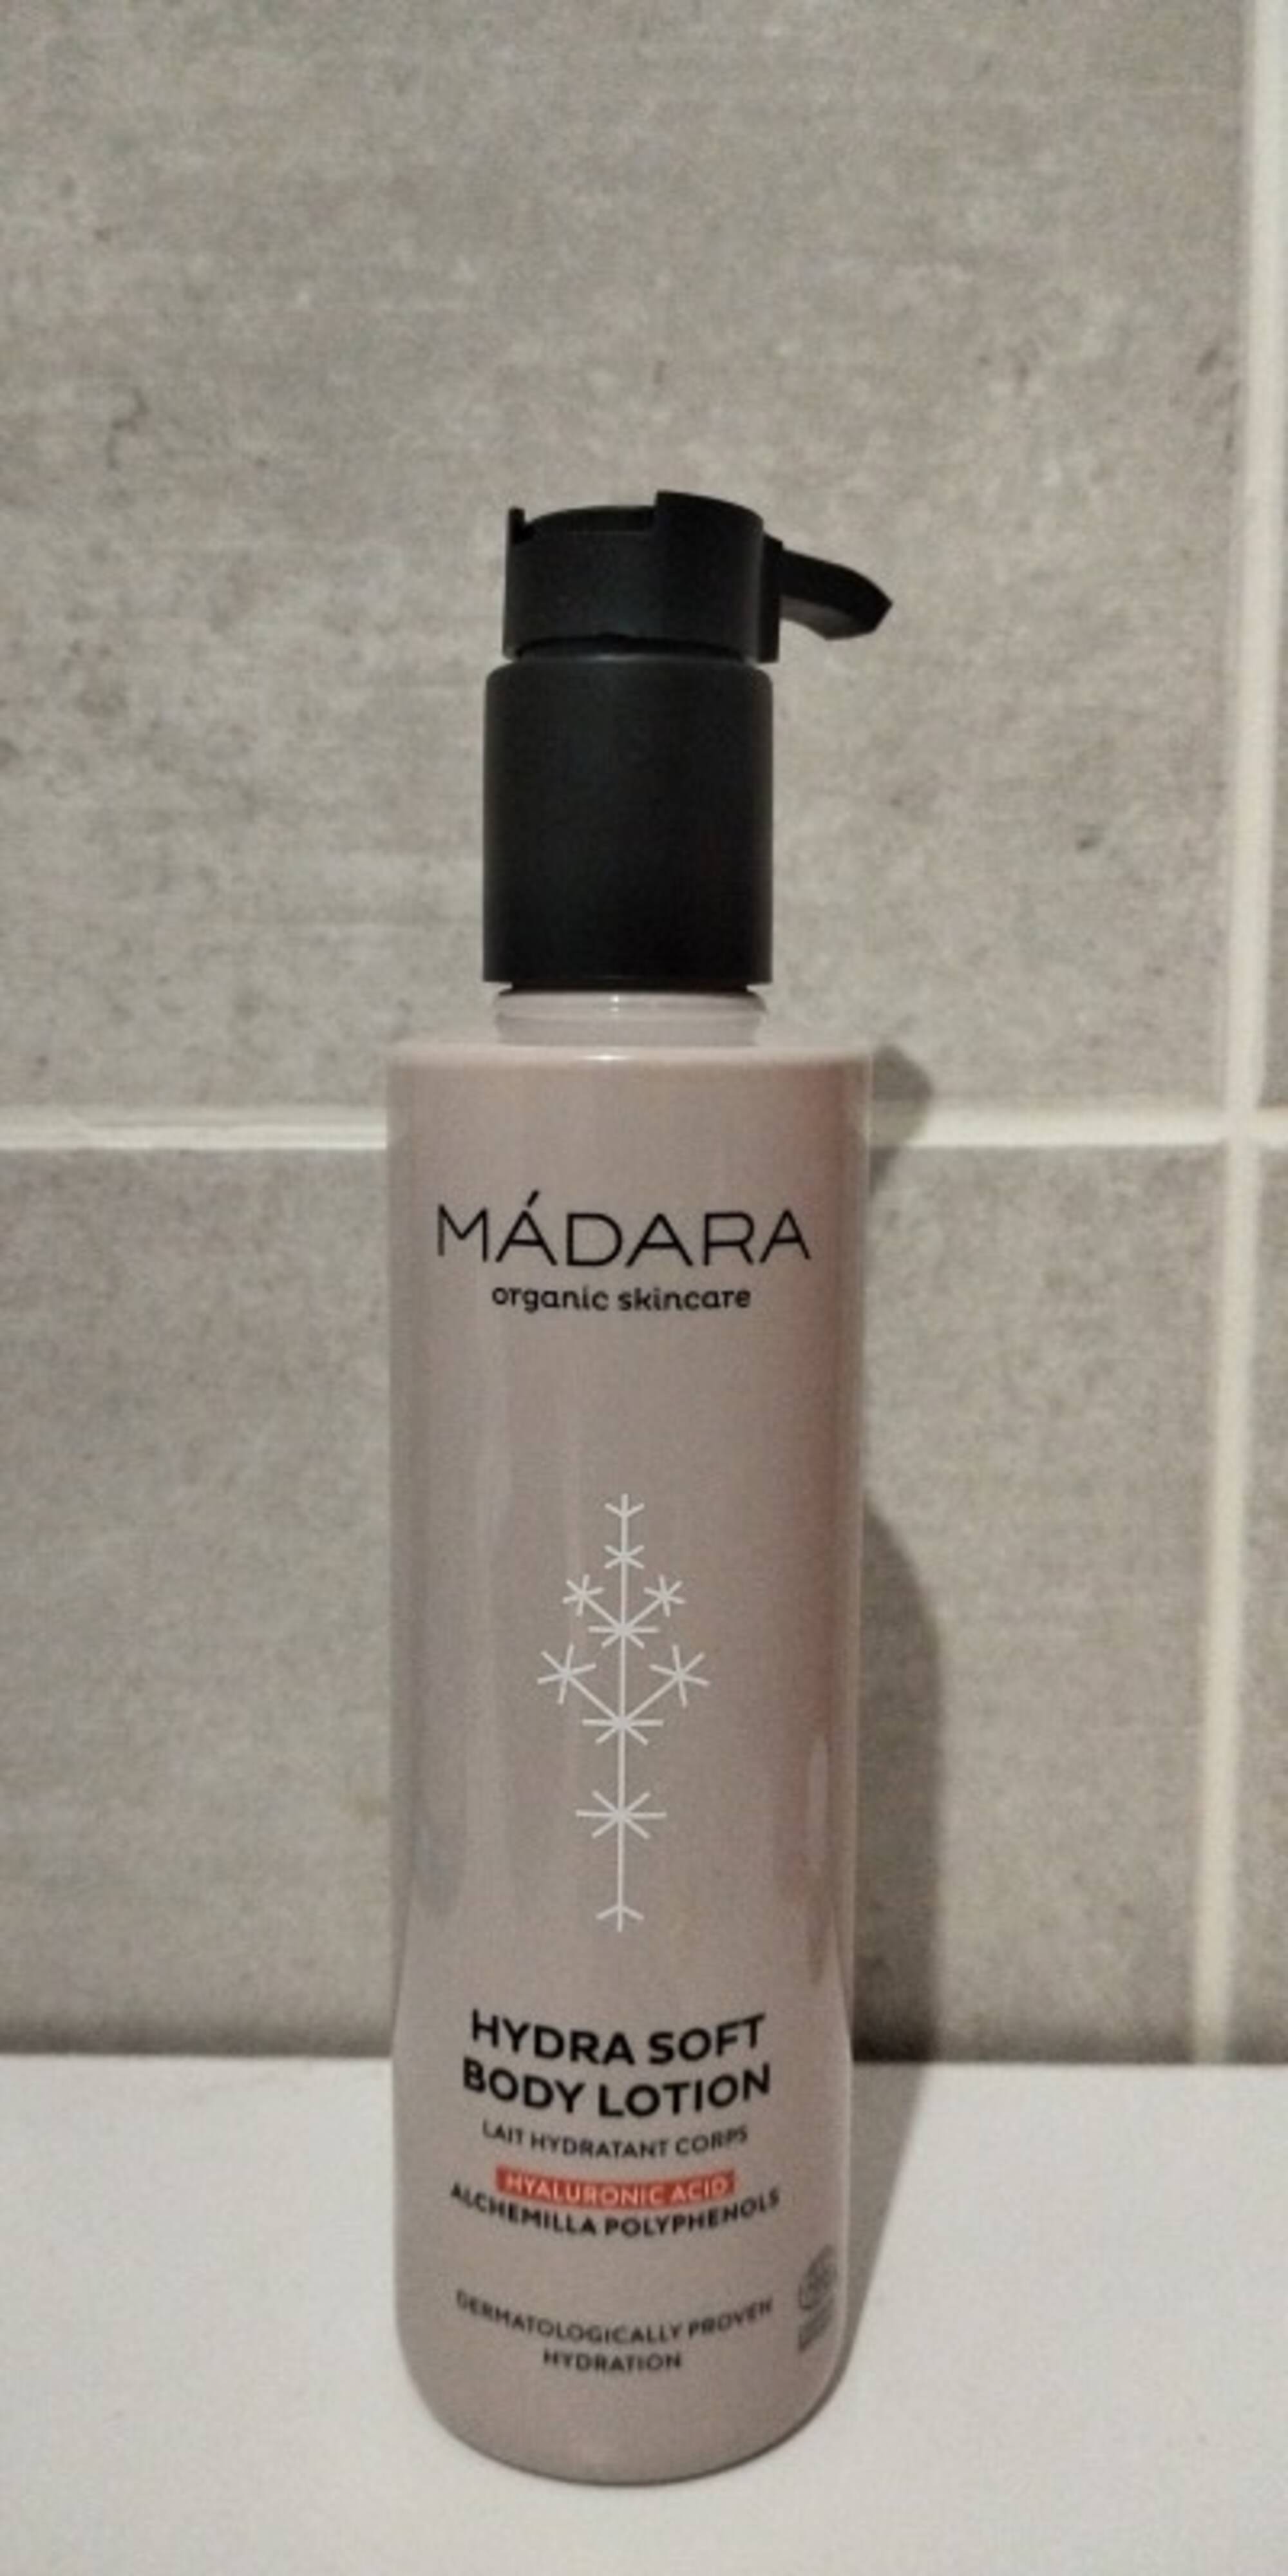 MÁDARA - Hydra soft - Body lotion